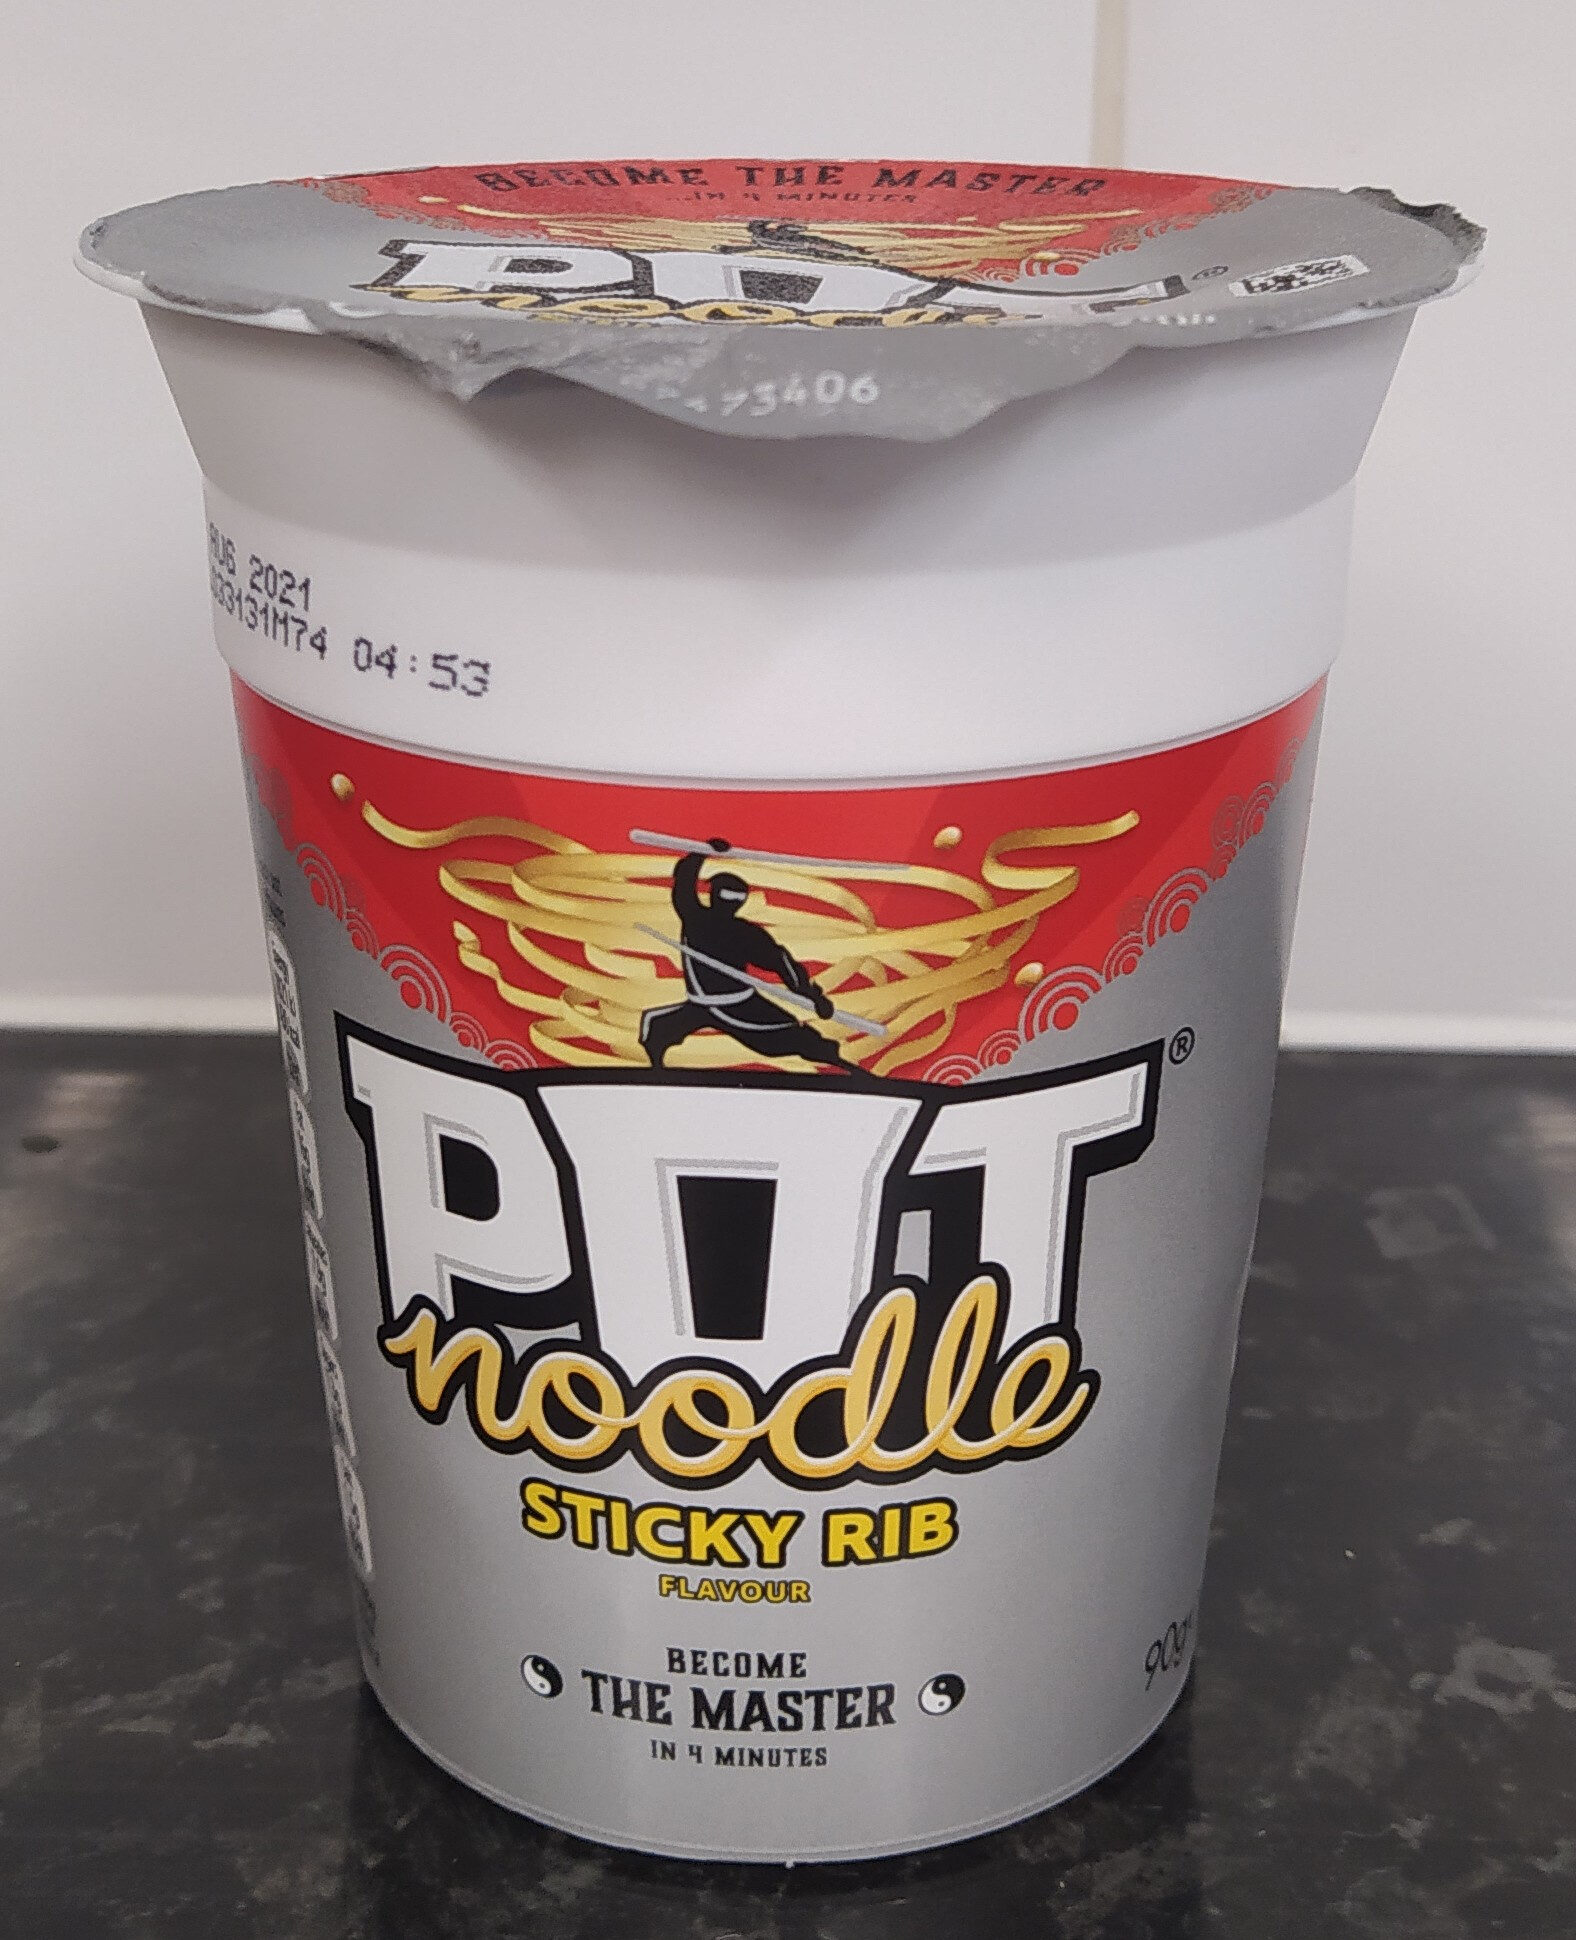 Pot Noodle Sticky Rib - Product